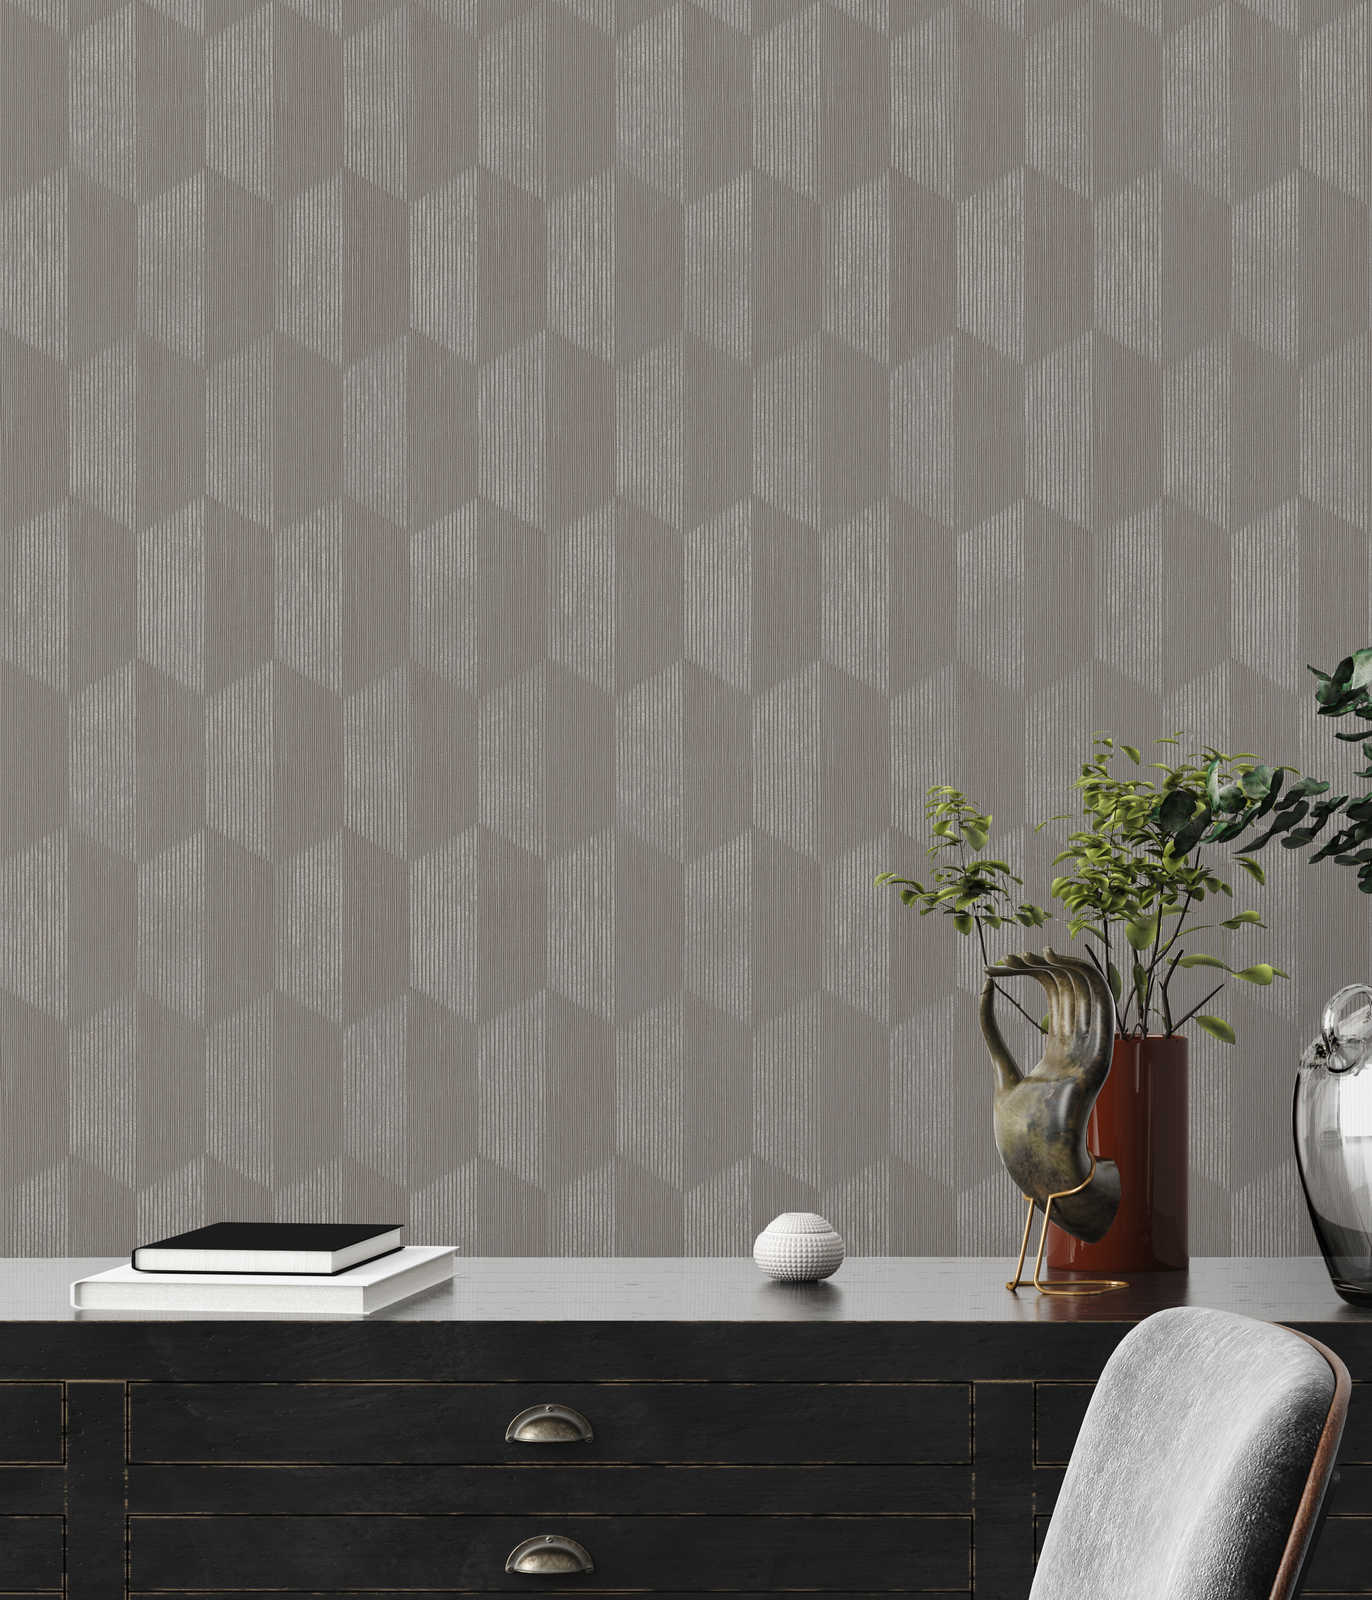             Textuurbehang met 3D grafisch patroon - grijs, beige
        